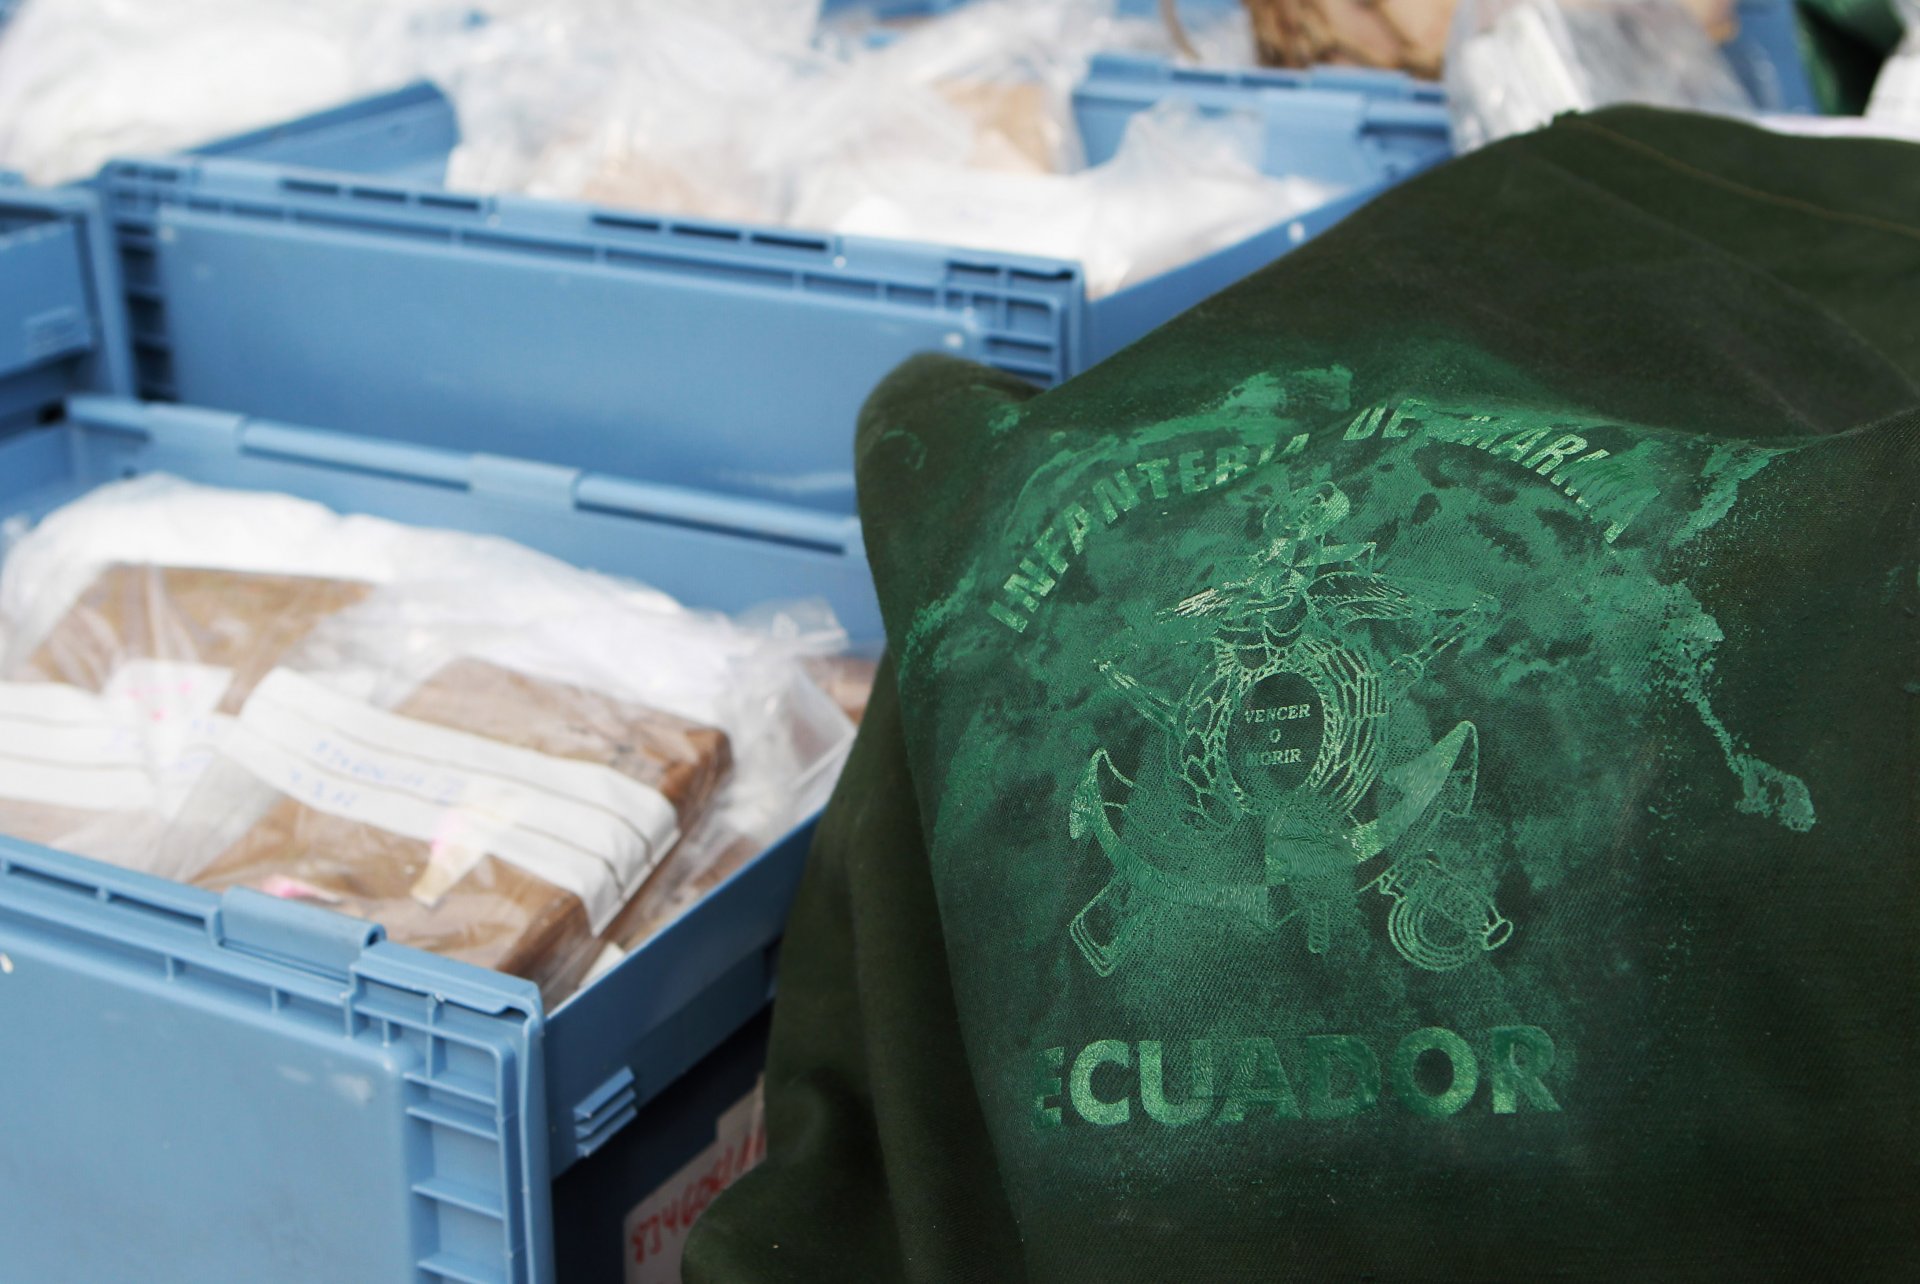 Пакети, съдържащи конфискуван кокаин, заловен на кораб идващ от Еквадор. Снимката е илюстративна.